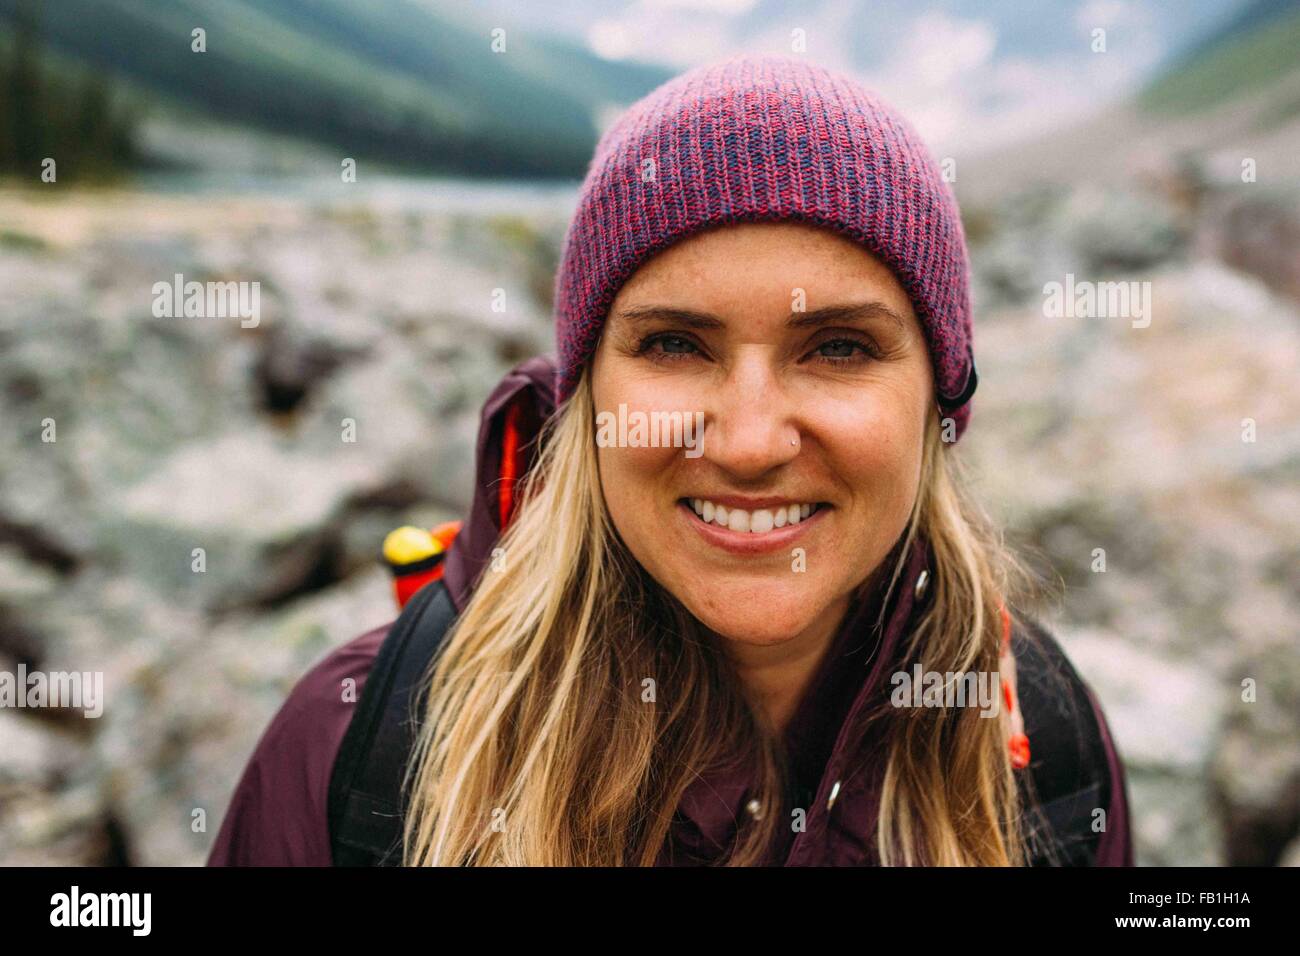 Porträt von Mitte erwachsenen Frau trägt stricken Hut Blick in die Kamera Lächeln, Moraine Lake, Banff Nationalpark, Alberta Kanada Stockfoto